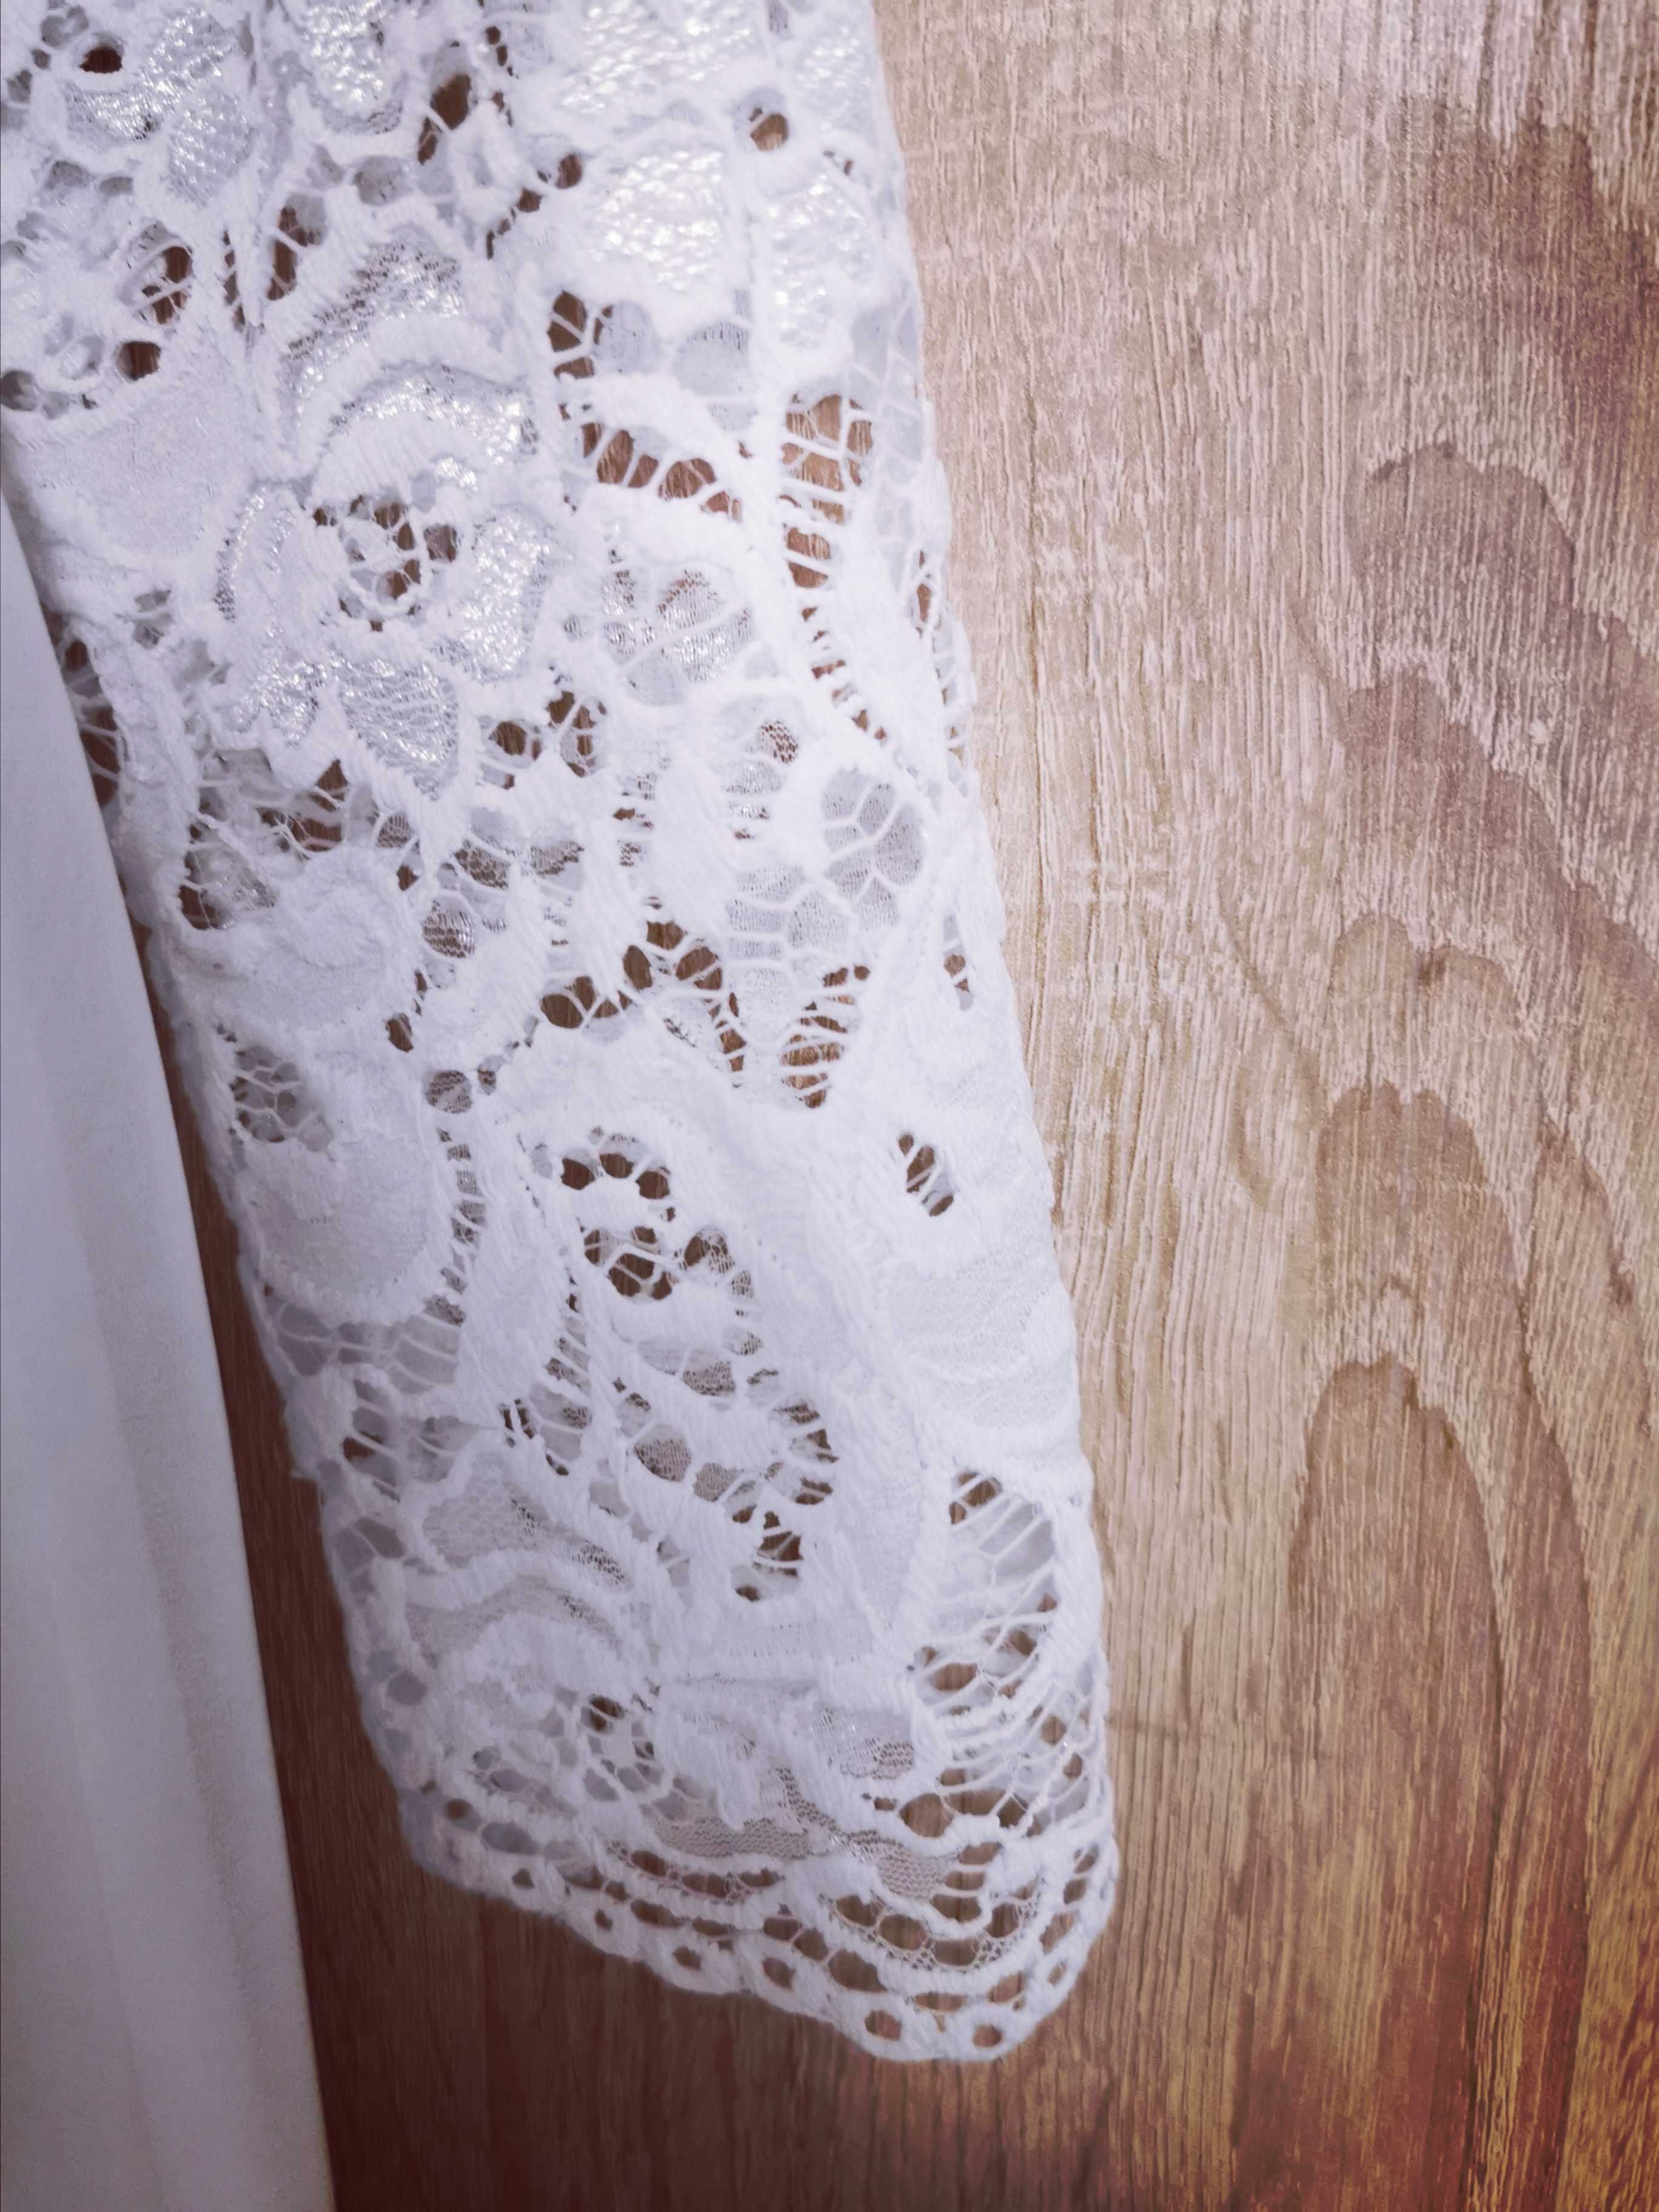 Suknia ślubna biała koronka i muslin rozmiar 38-40